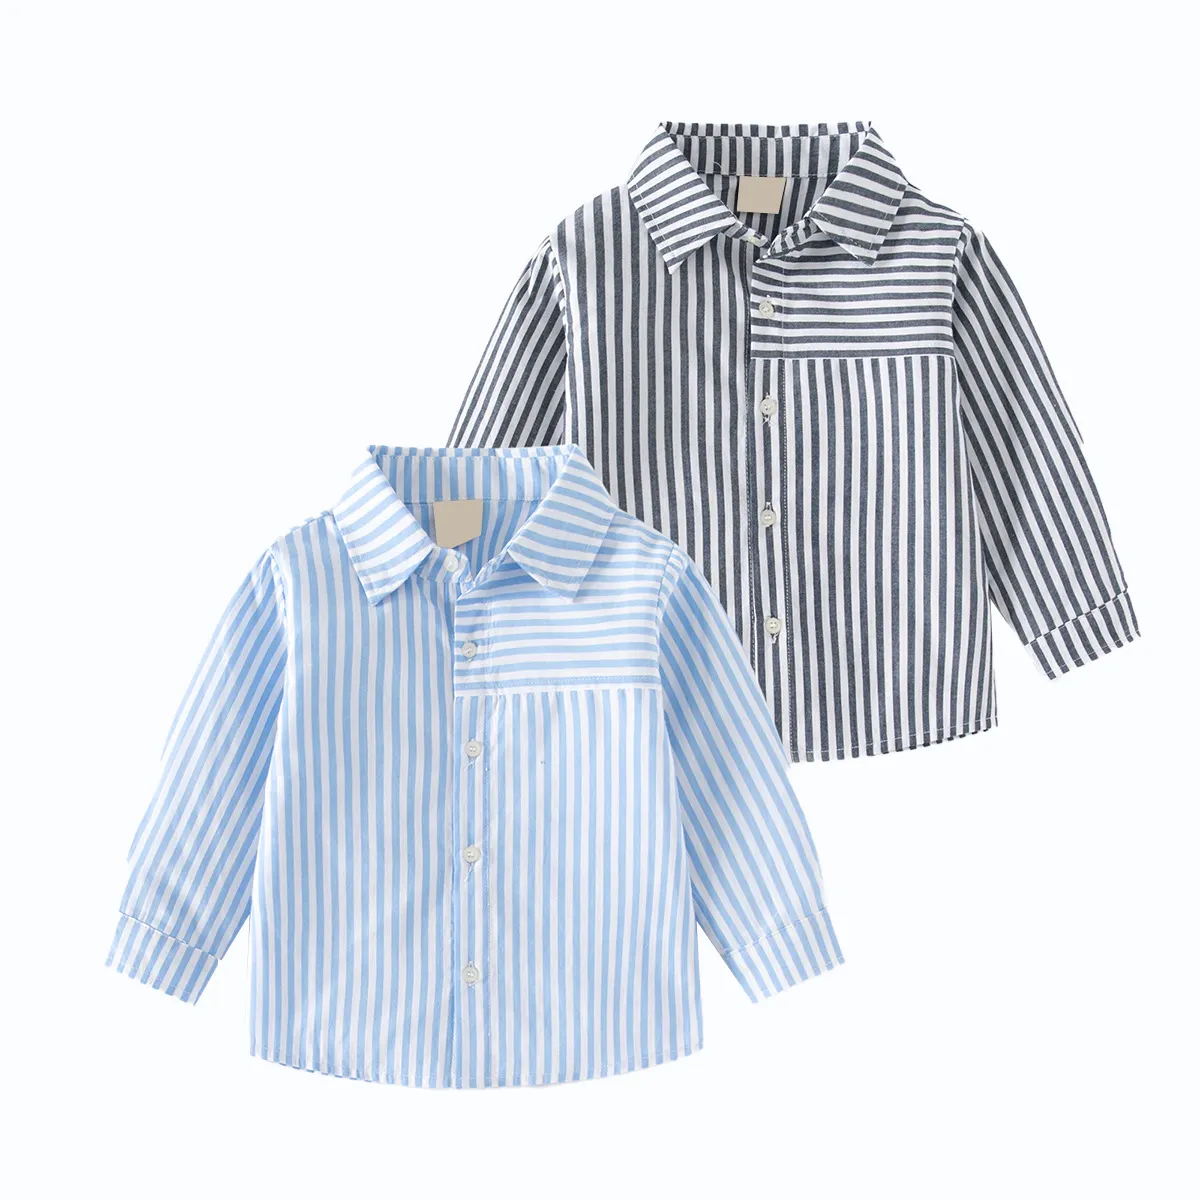 Haute qualité à manches longues enfants coton rayé enfants t-shirt personnalisé à manches longues polo cou garçons t-shirt